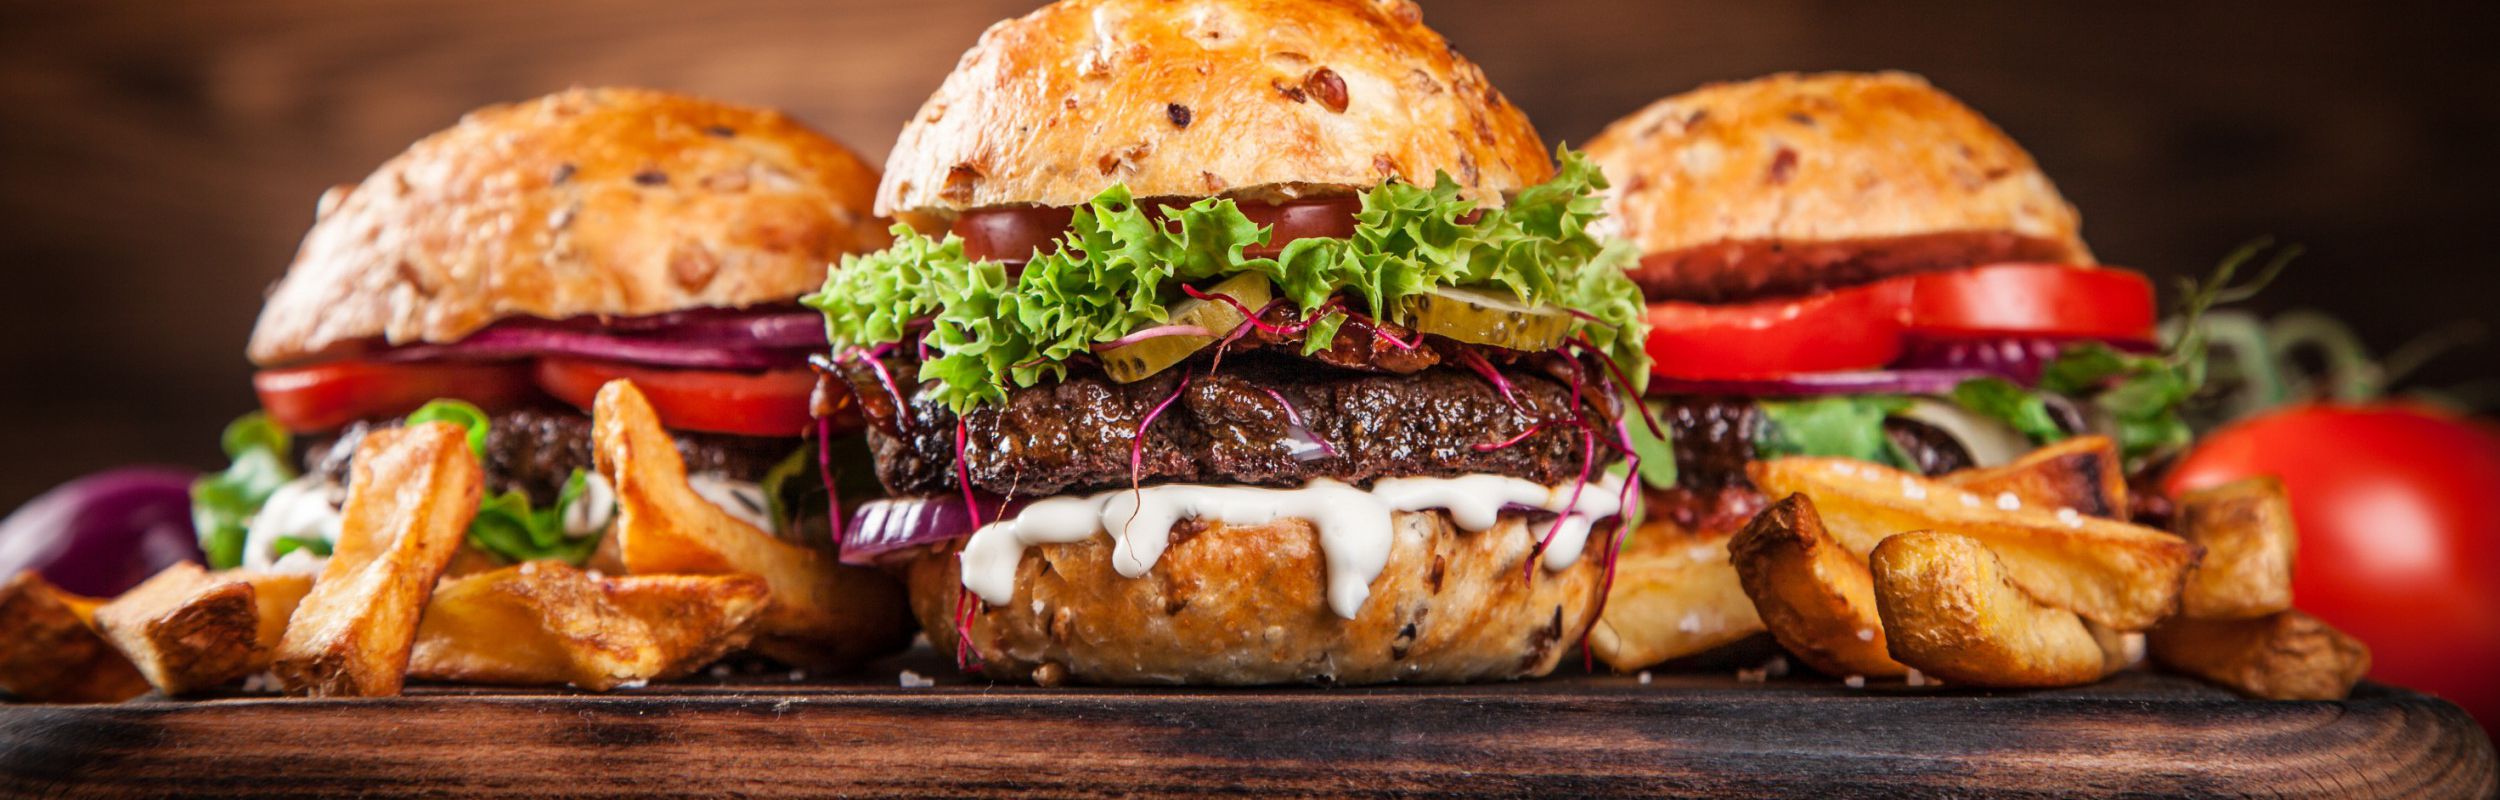 Prova i nostri hamburger - Ordinalo è la soluzione giusta per la tua hamburgeria!